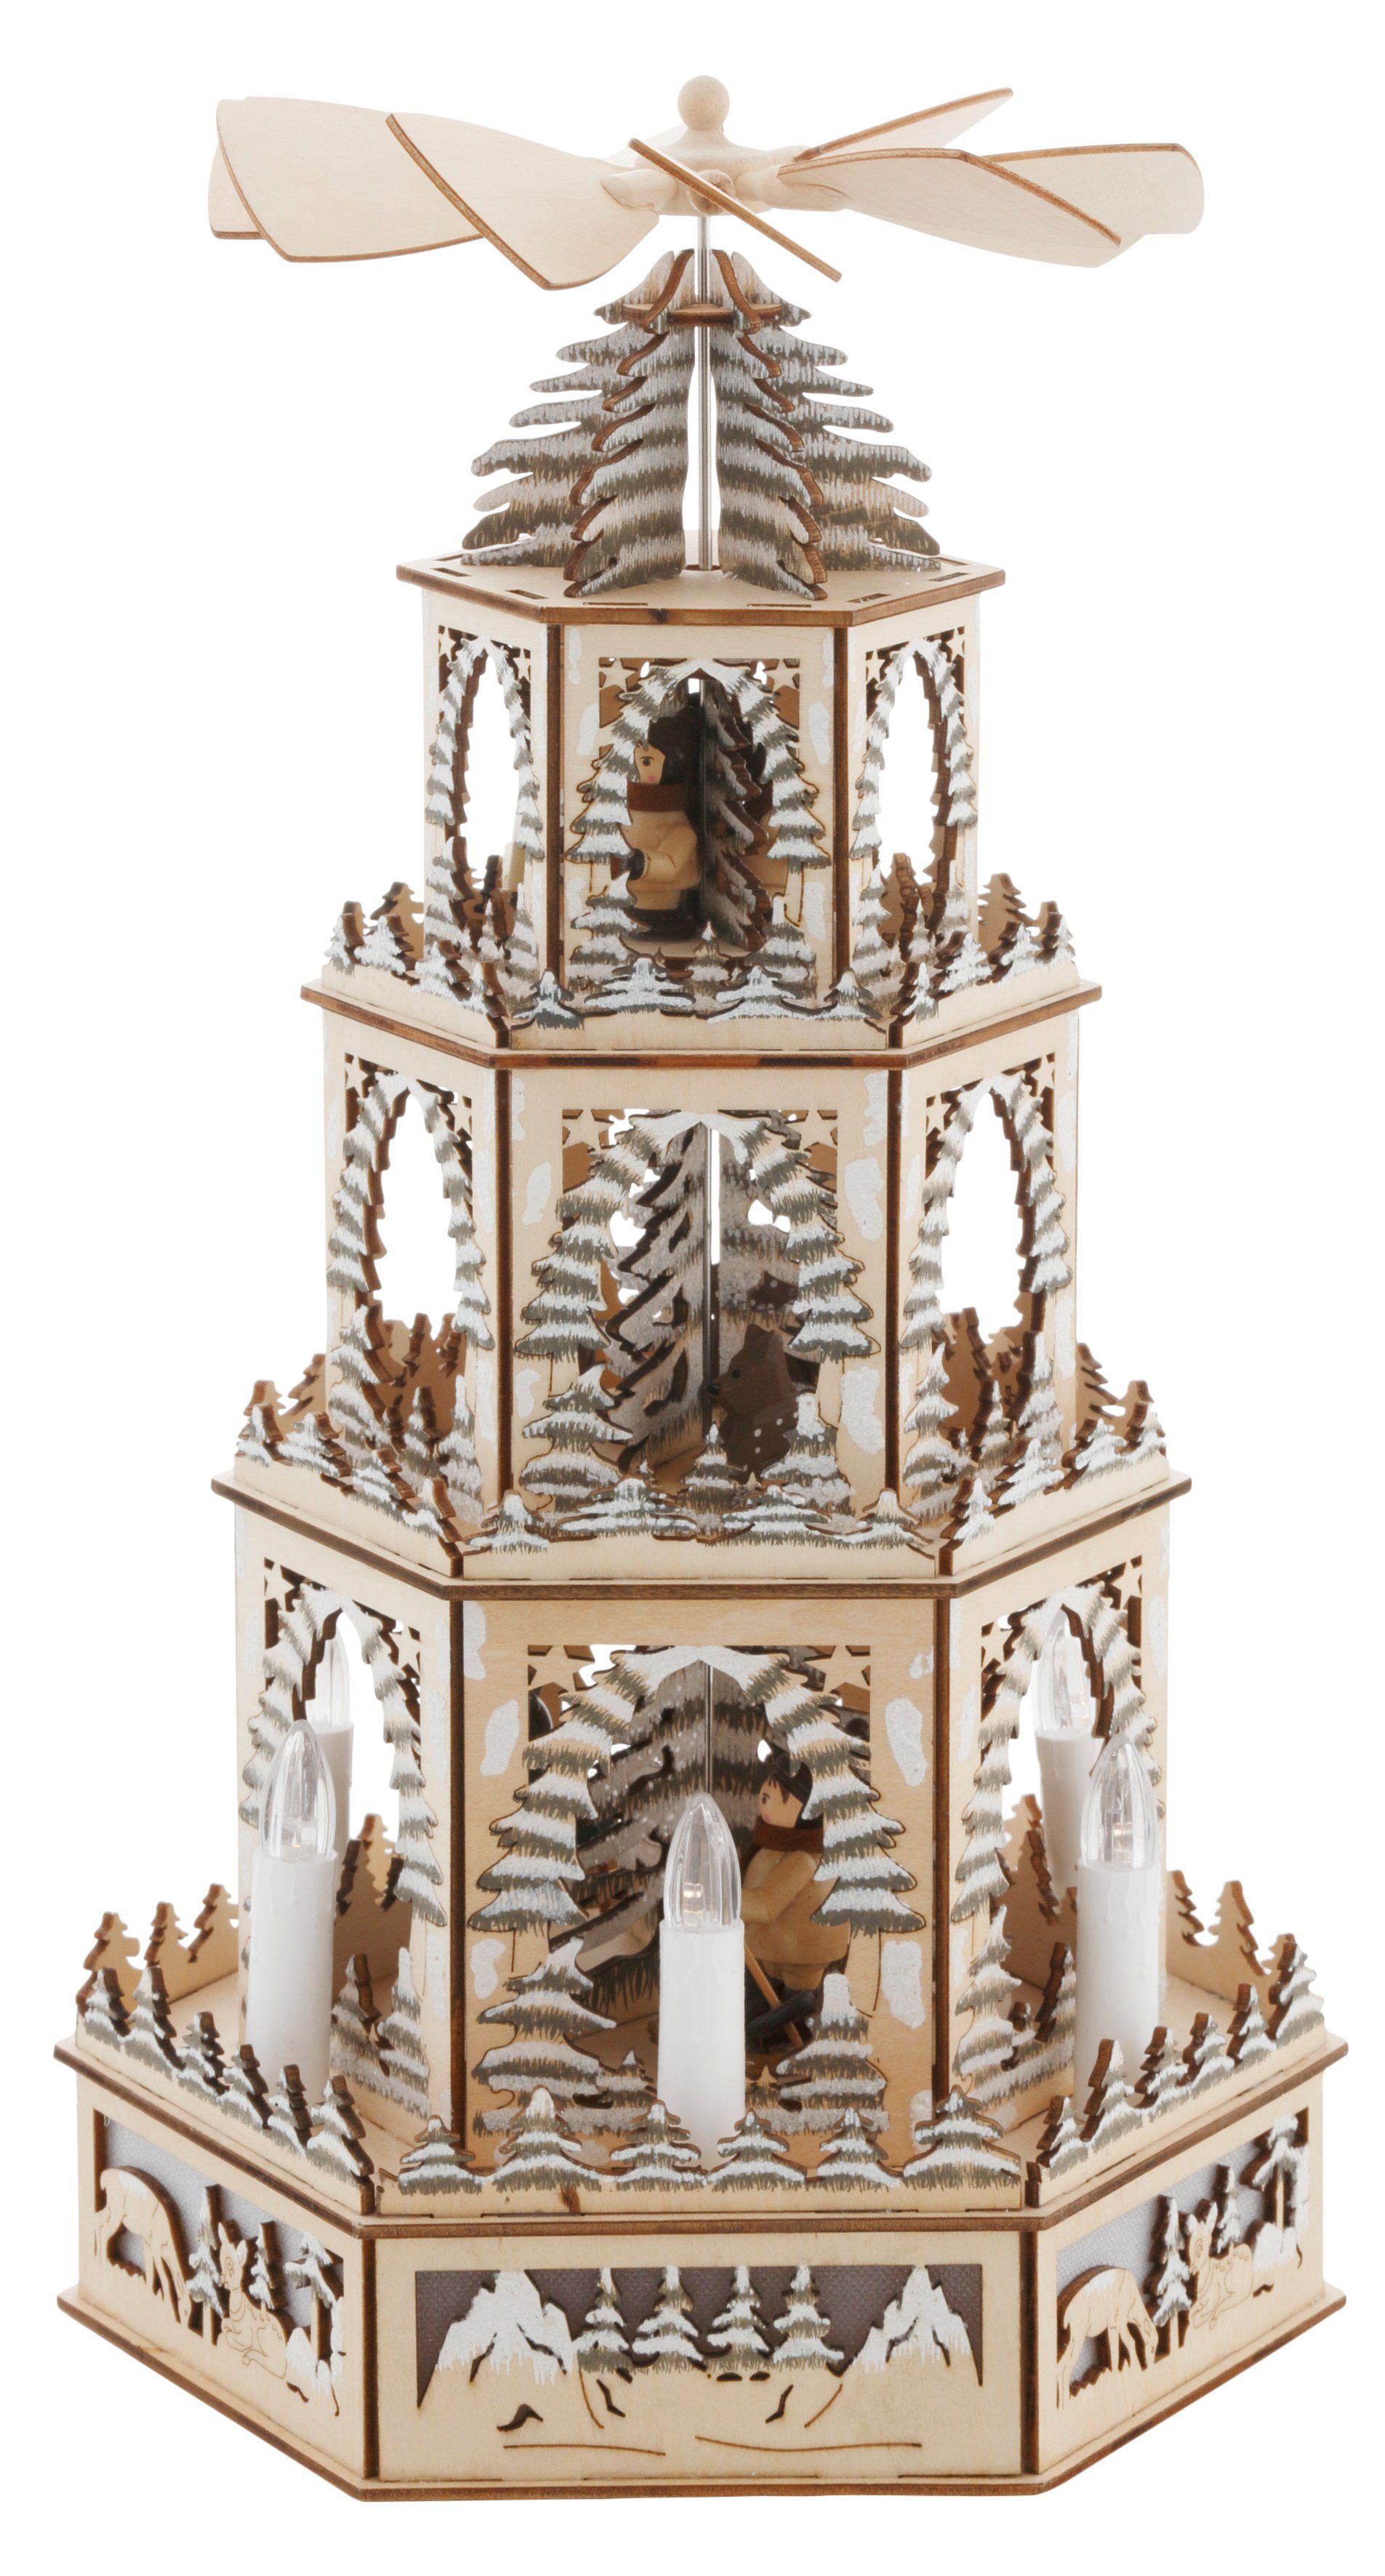 Myflair Möbel & Accessoires Weihnachtspyramide Weihnachtsdeko, mit LED Beleuchtung und beweglichen Figuren, Höhe ca. 48 cm